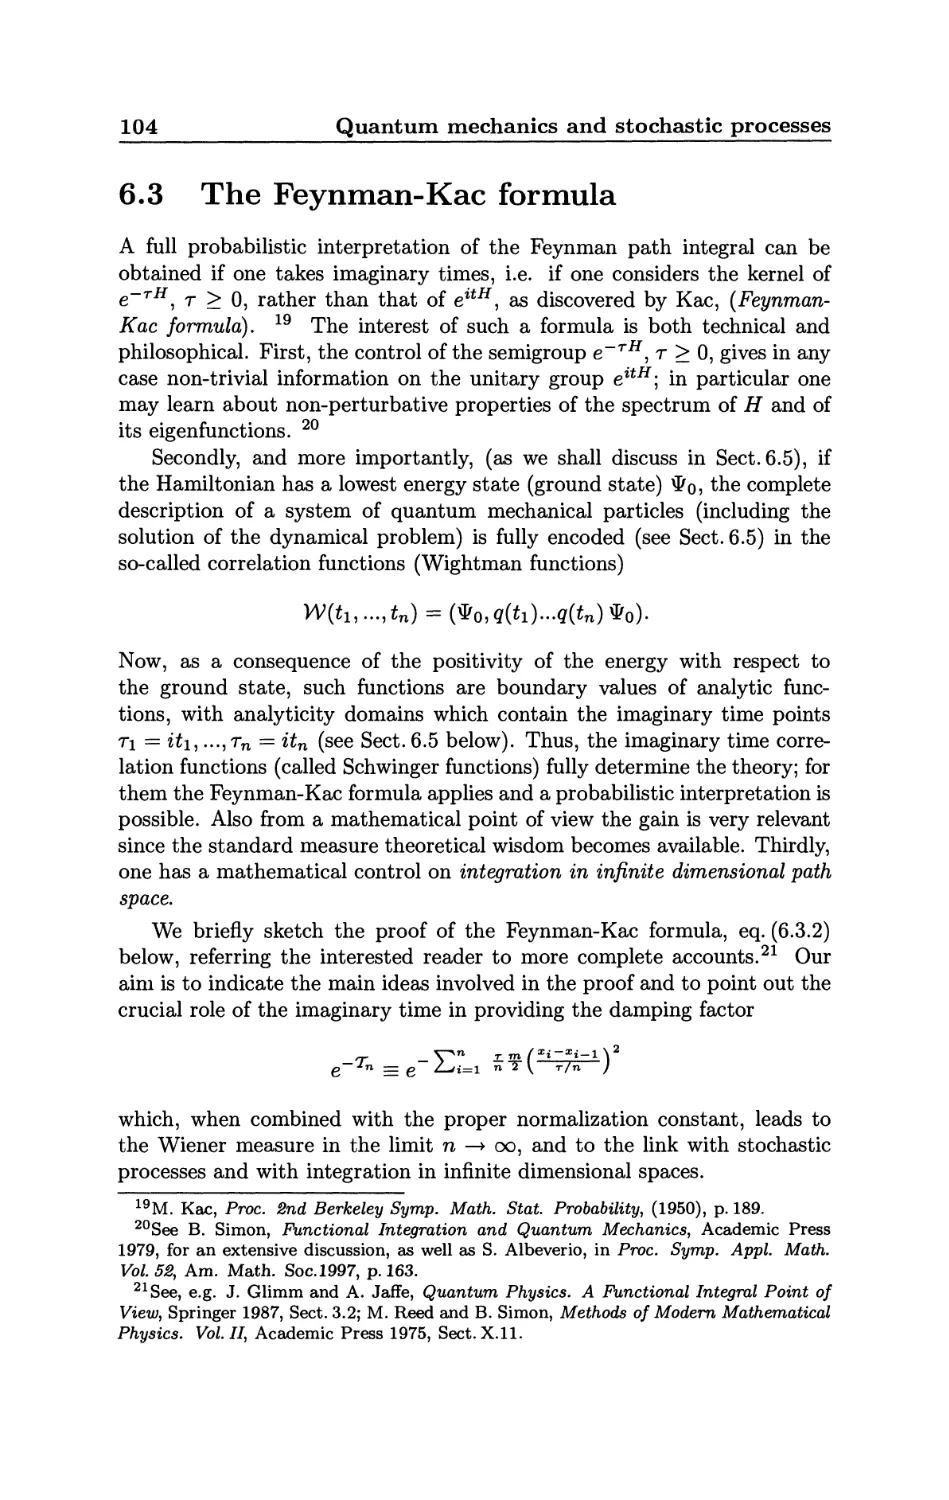 6.3 The Feynman-Kac formula